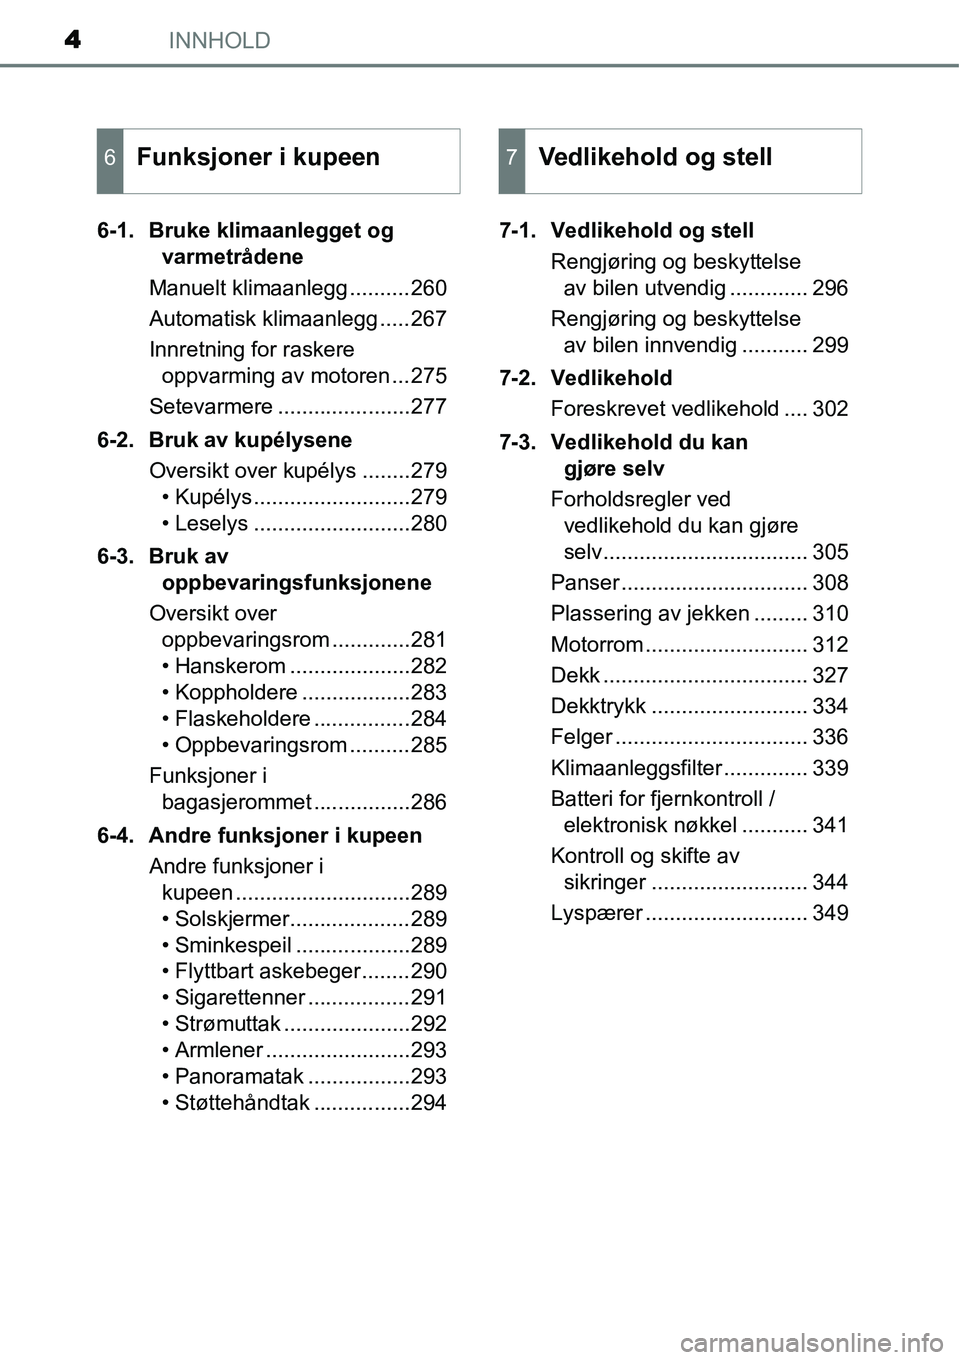 TOYOTA YARIS 2015  Instruksjoner for bruk (in Norwegian) INNHOLD4
6-1. Bruke klimaanlegget og 
varmetrådene
Manuelt klimaanlegg ..........260
Automatisk klimaanlegg .....267
Innretning for raskere 
oppvarming av motoren ...275
Setevarmere .................